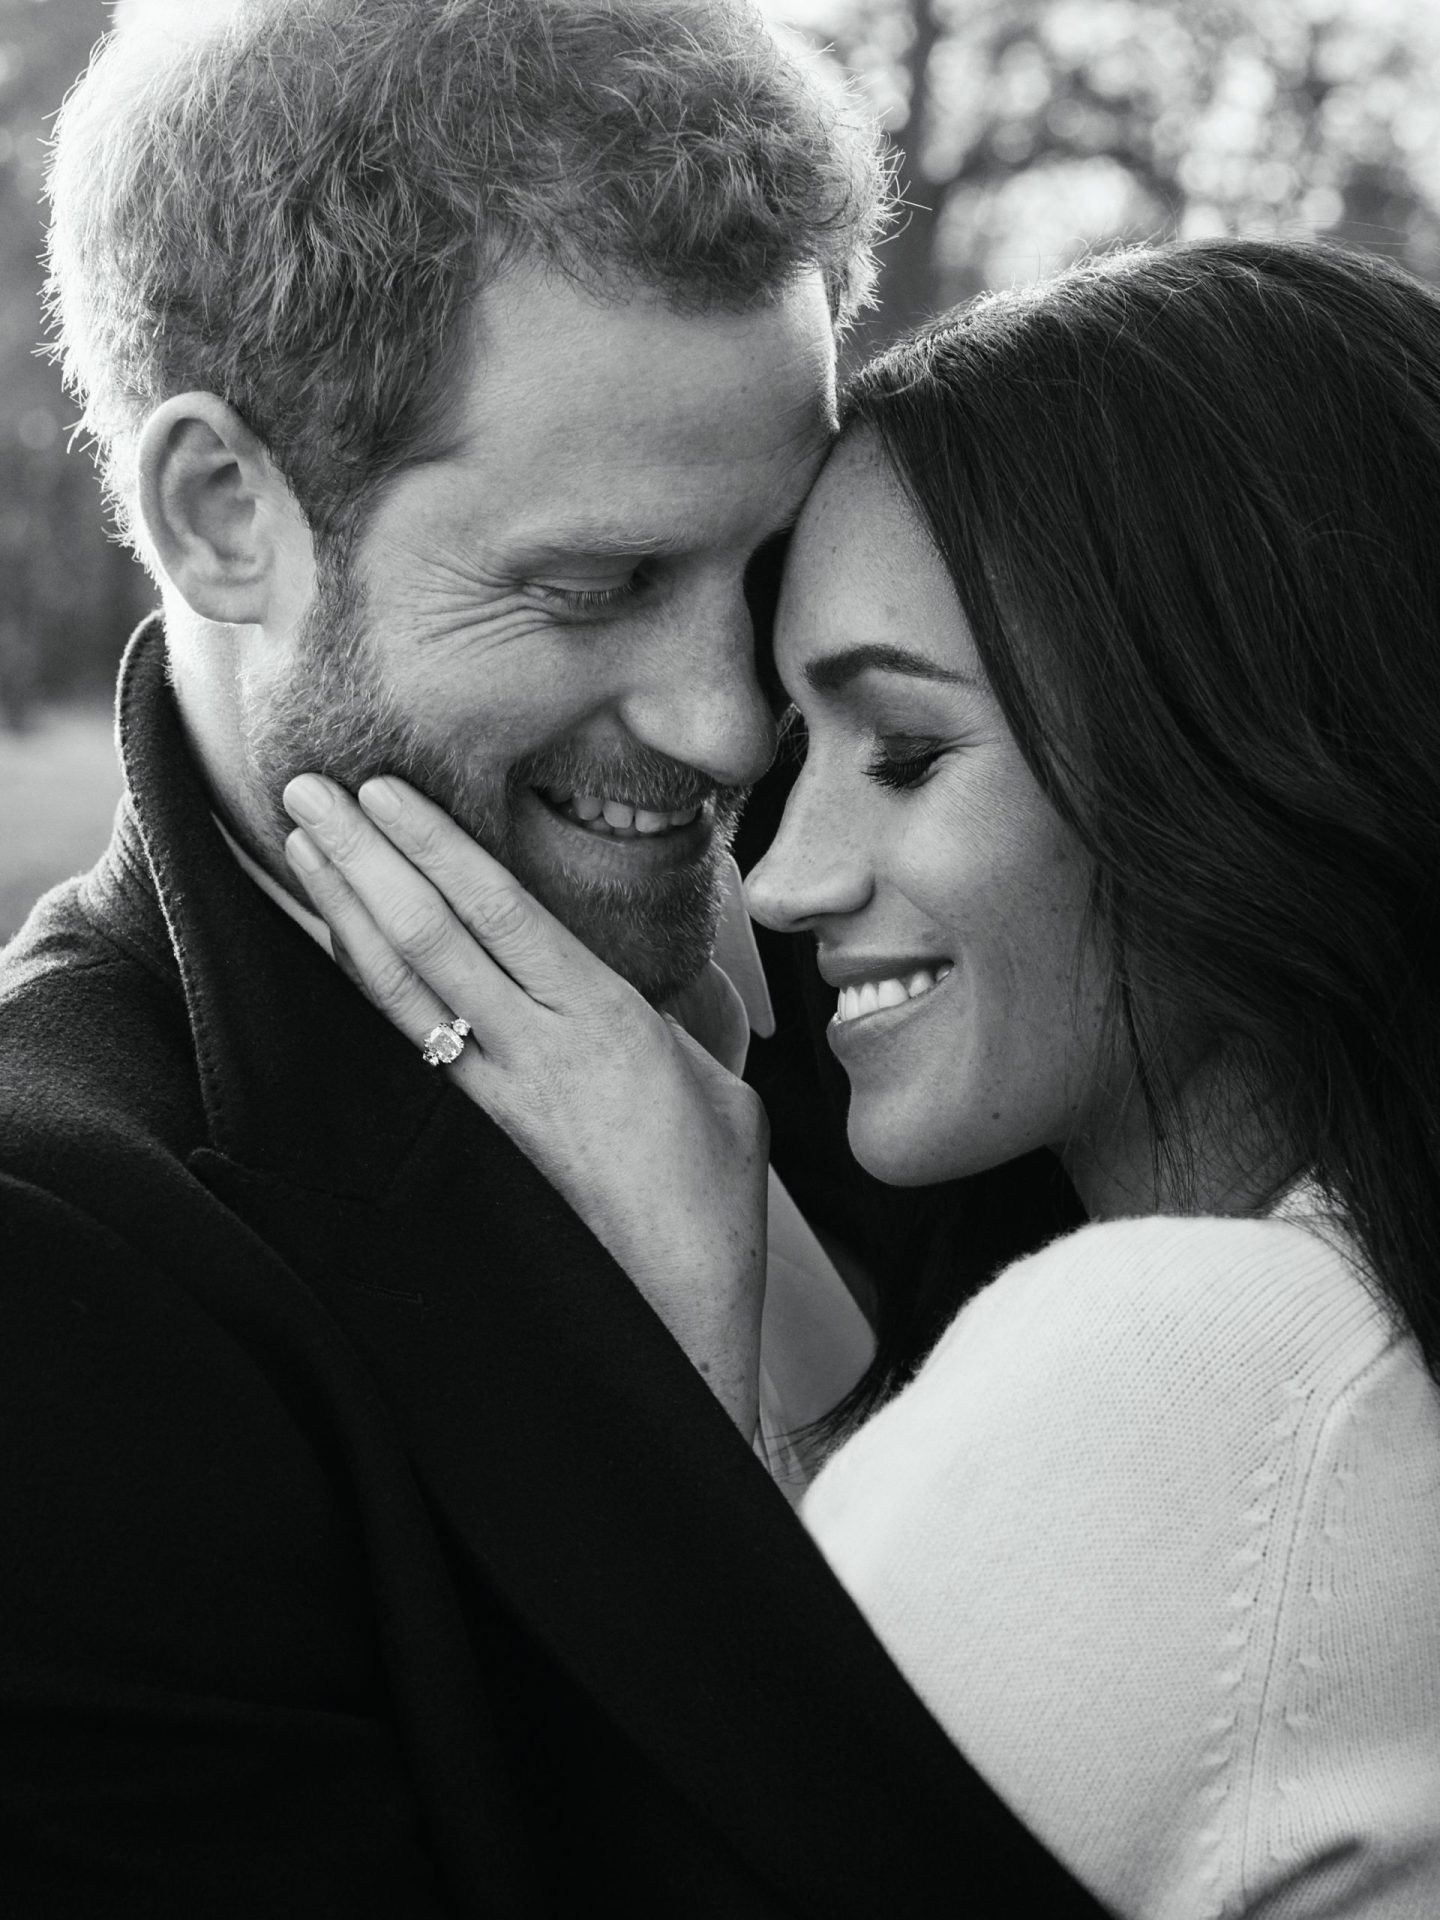 Príncipe Harry e Meghan Markle divulgam fotografias oficiais do noivado | Fotogaleria